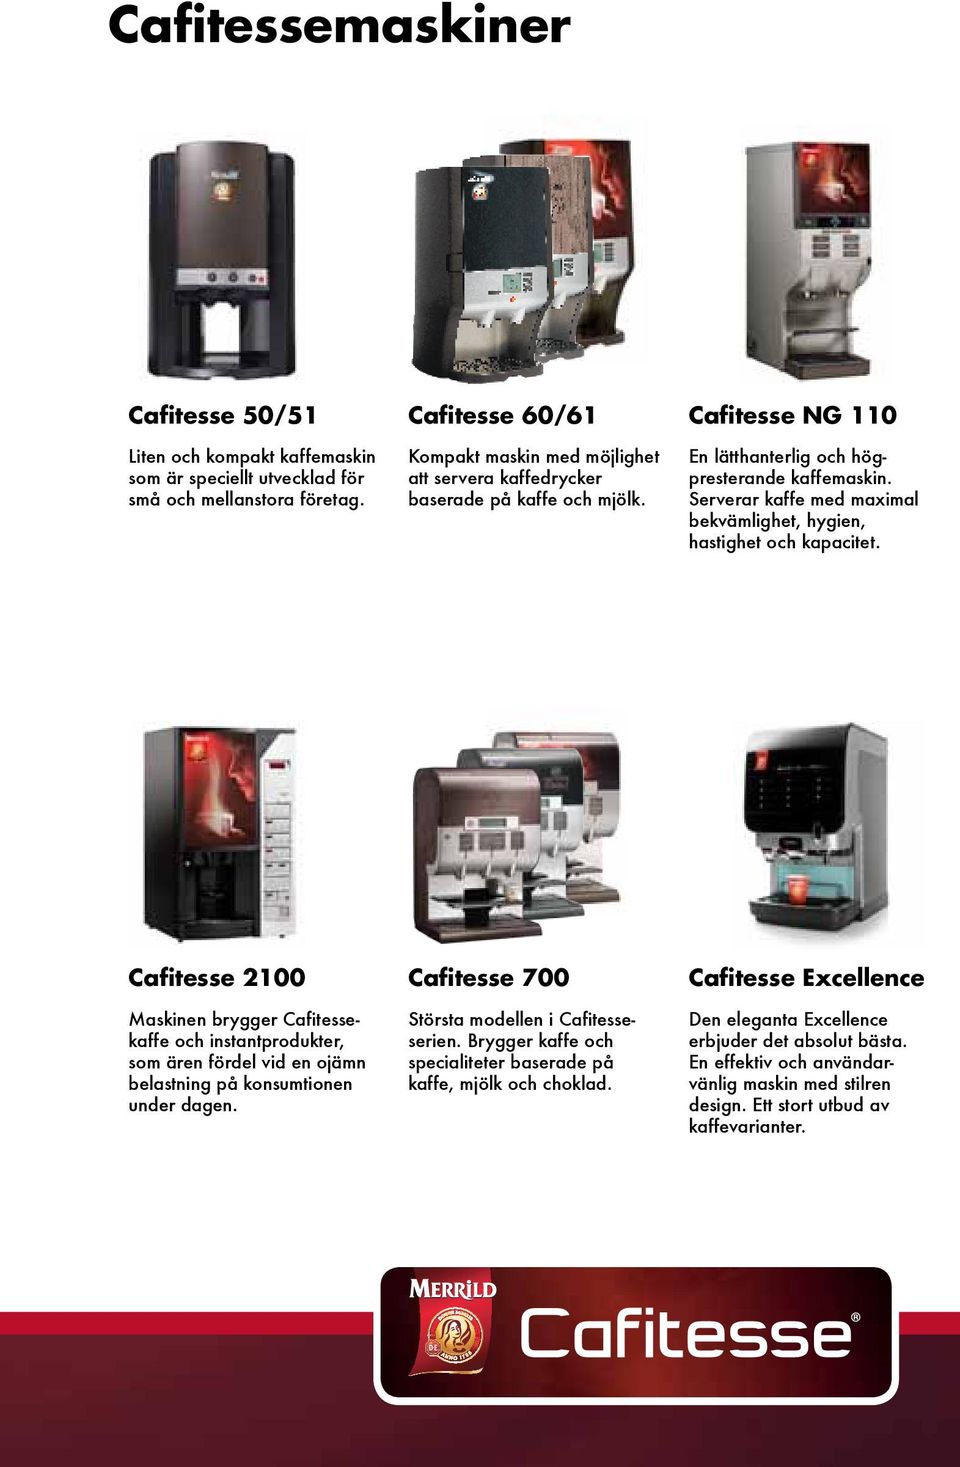 Serverar kaffe med maximal bekvämlighet, hygien, hastighet och kapacitet.